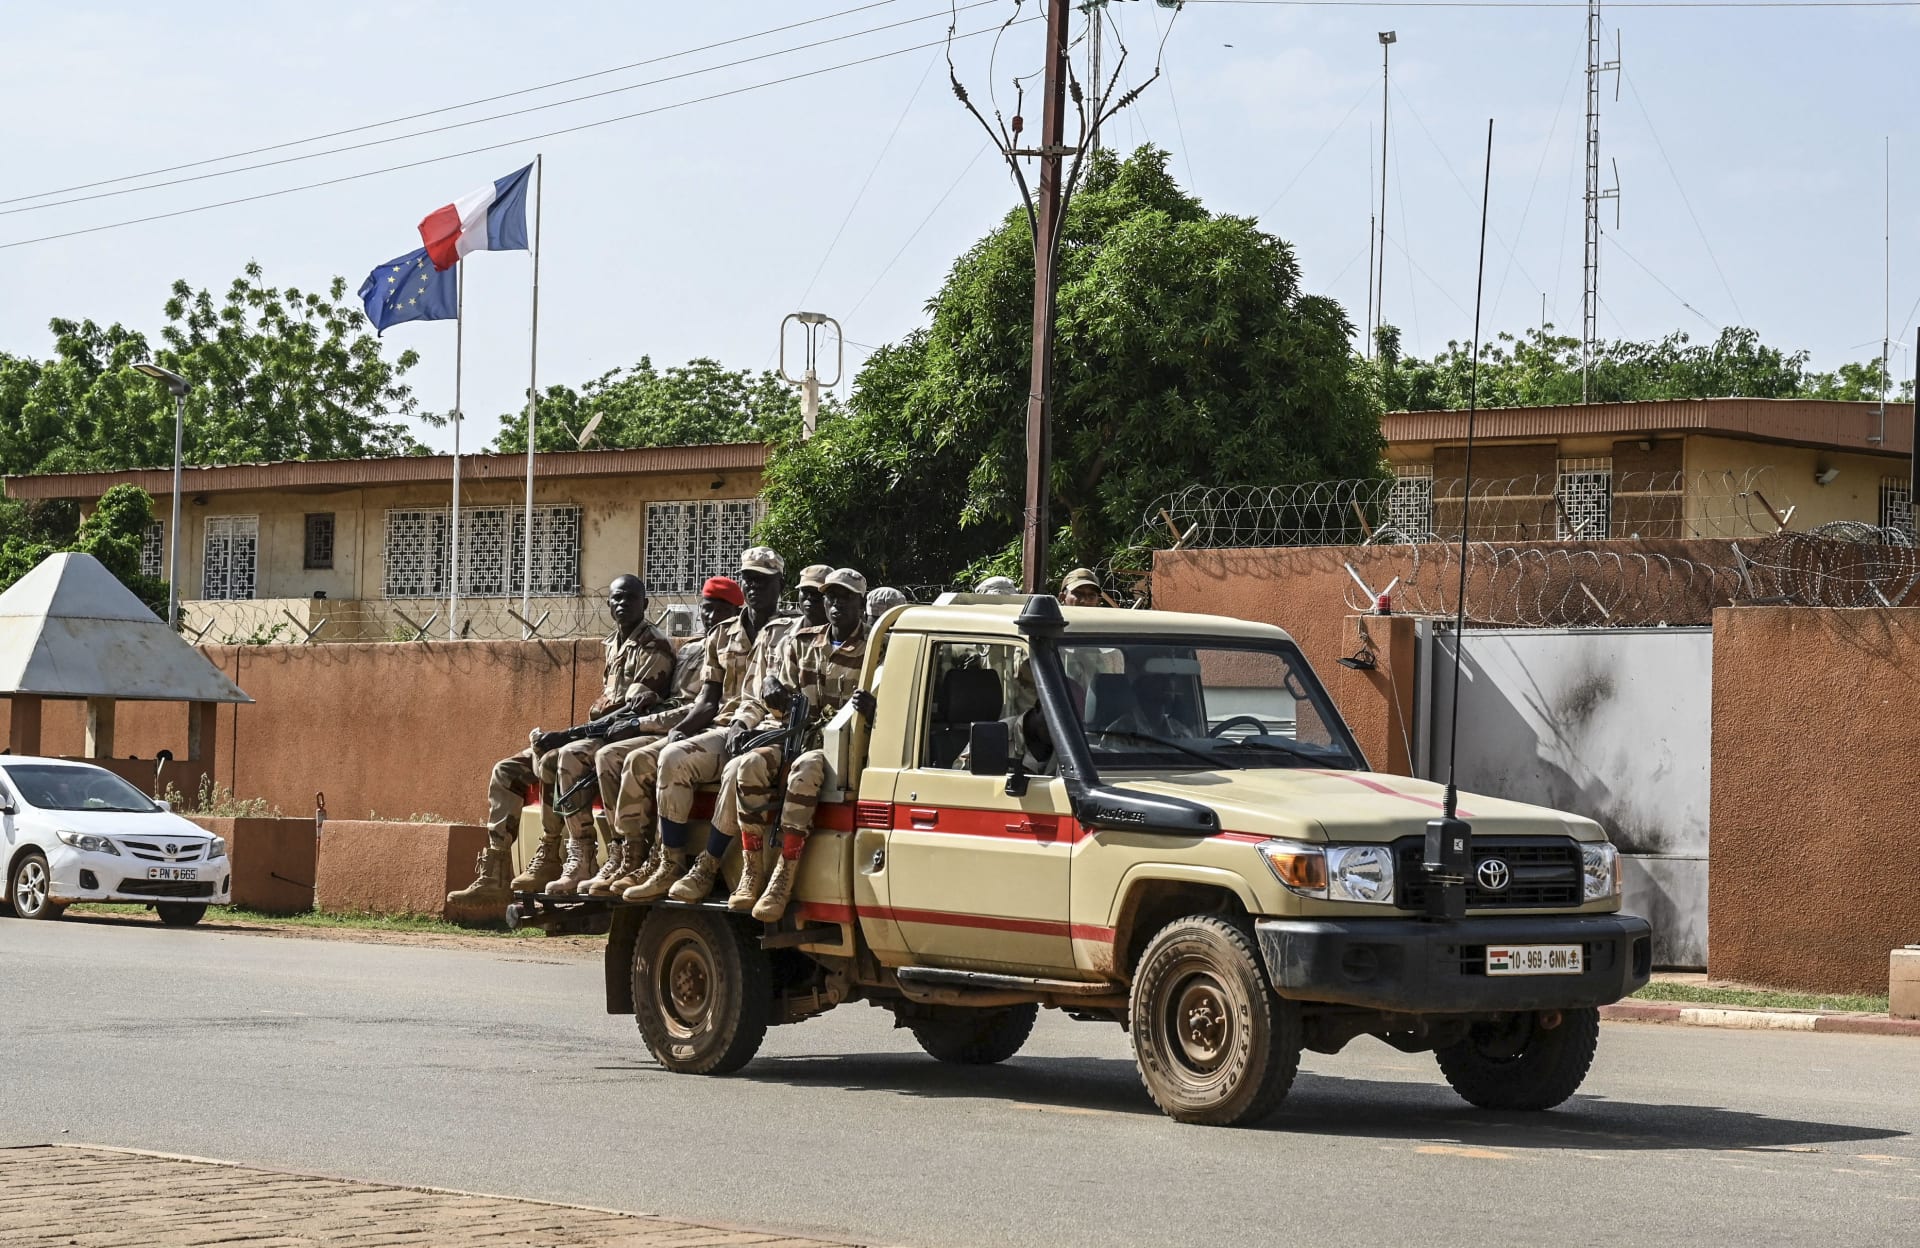 المجلس العسكري في النيجر يُلغي تأشيرة السفير الفرنسي وعائلته.. وهكذا علقت باريس